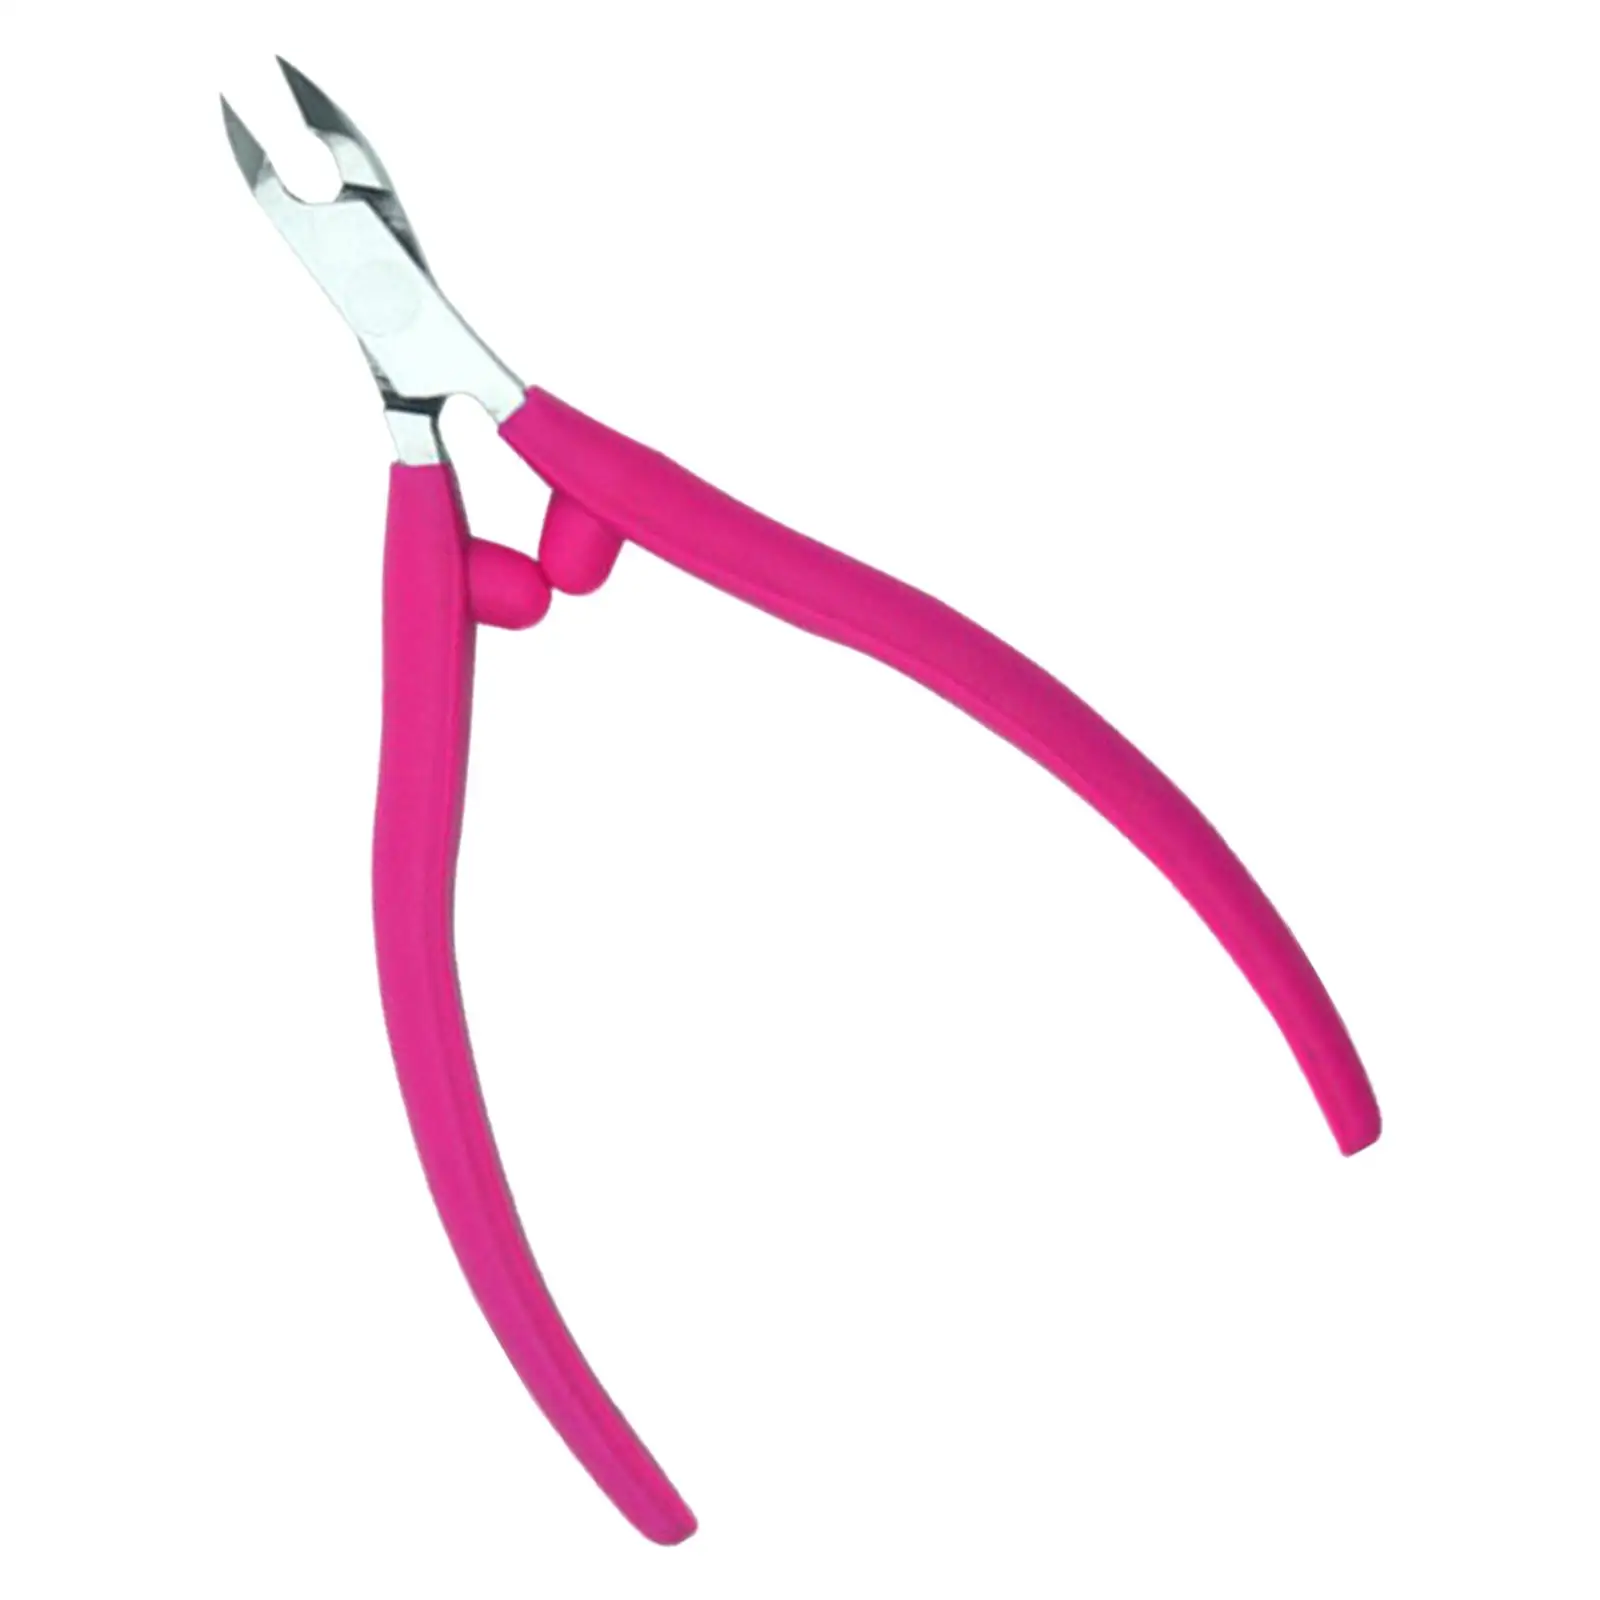 Cuticle Nipper Trimming Professional Scissor for Home Fingernails Toenails